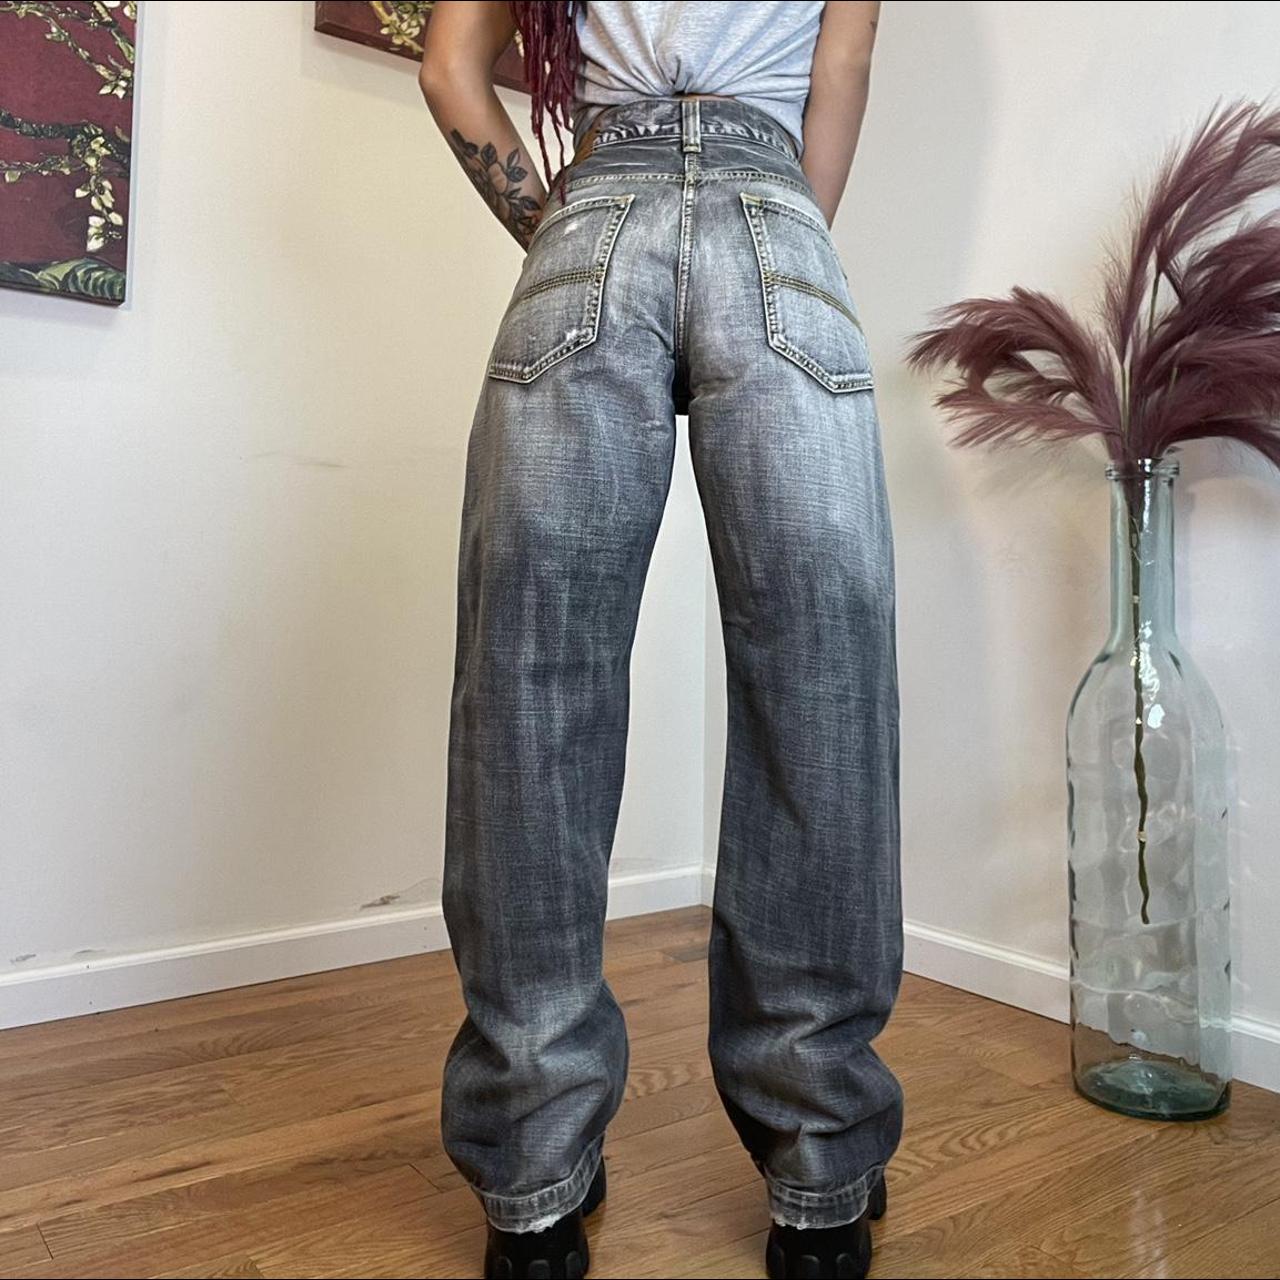 Vintage Grey Denim Jeans more about the... - Depop